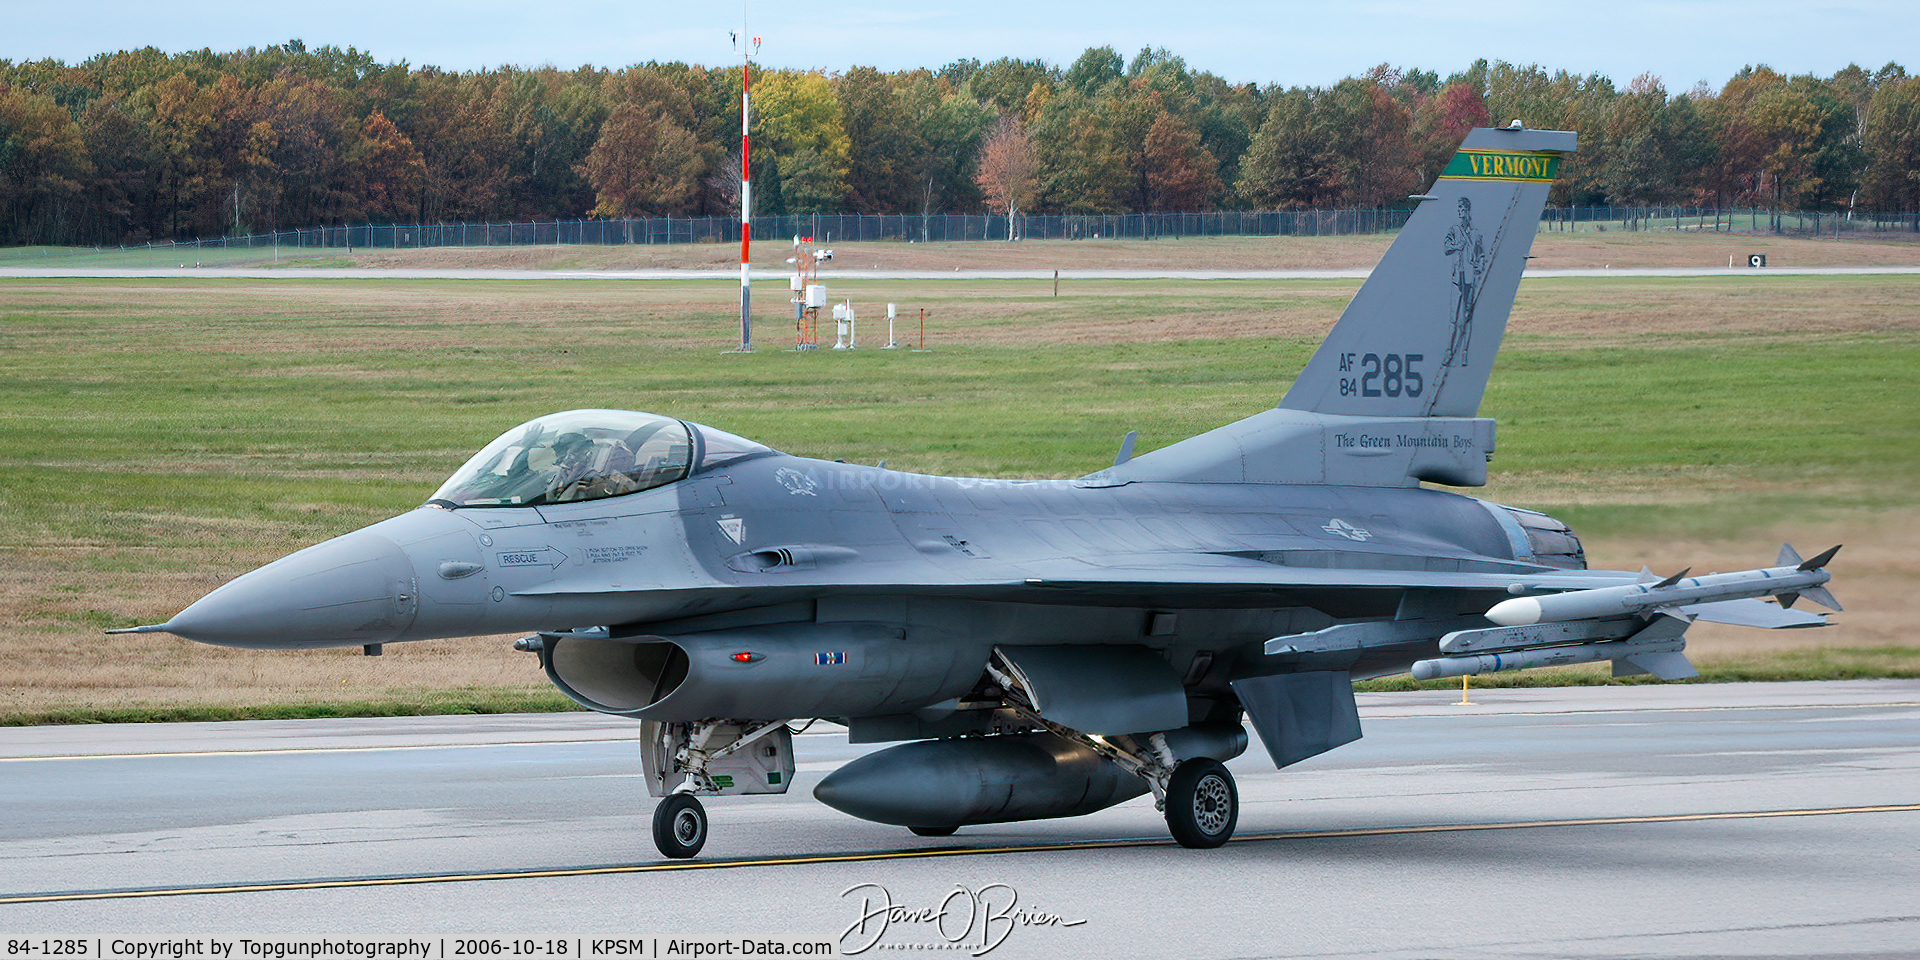 84-1285, 1984 General Dynamics F-16C Block 25A C/N 5C-122, COORS32